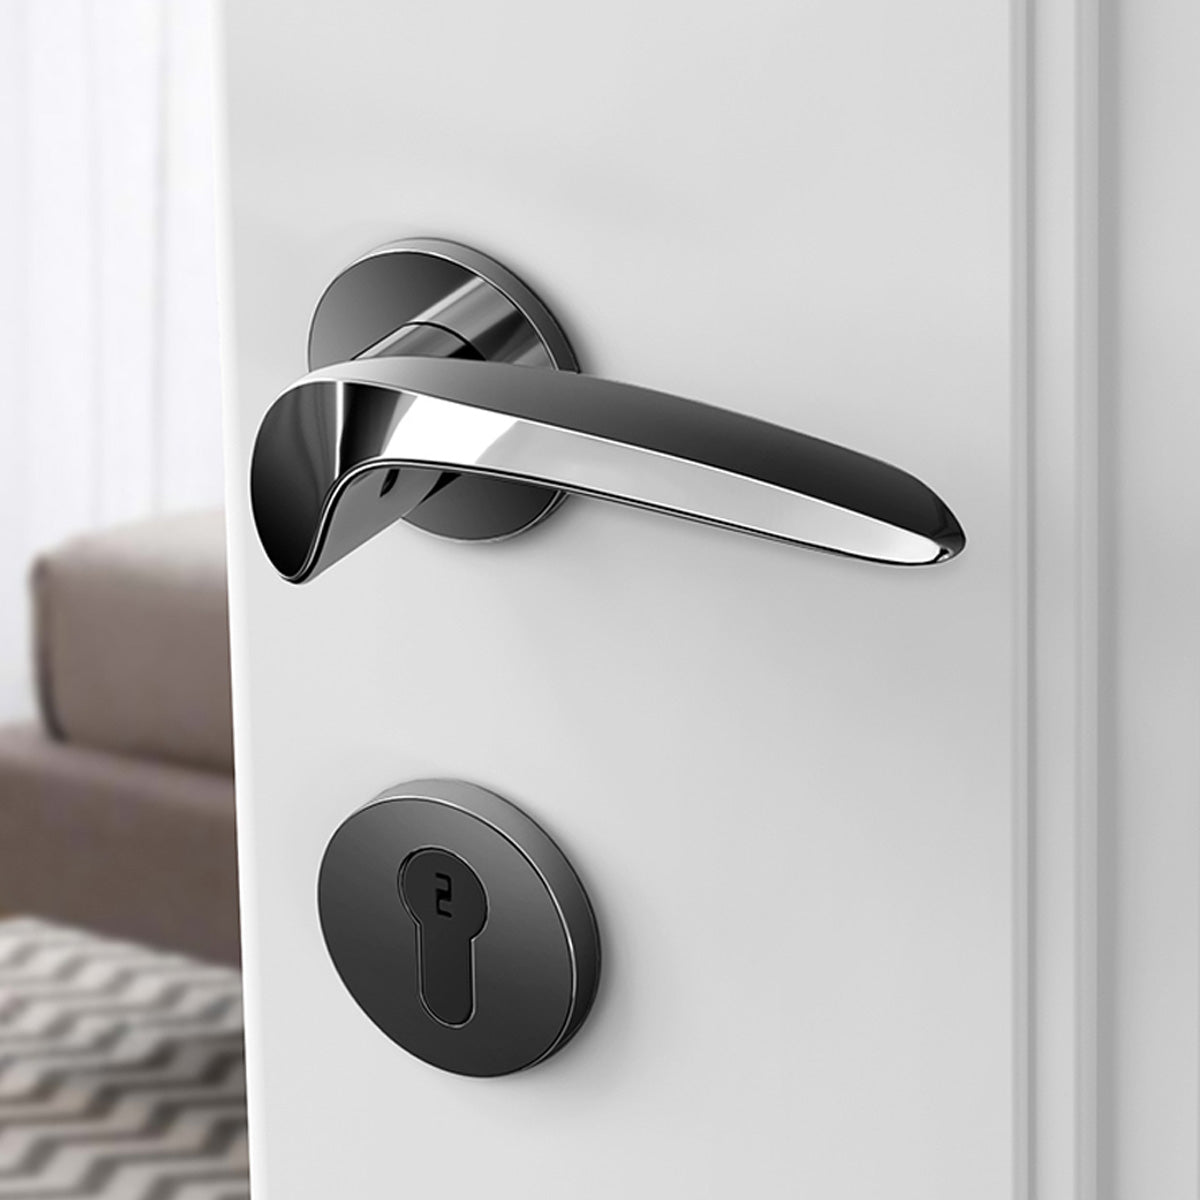 Door Lock Doors Handles Doors Hardware 升級款 高端系列 866501 門鎖 流線型設計 分體鎖